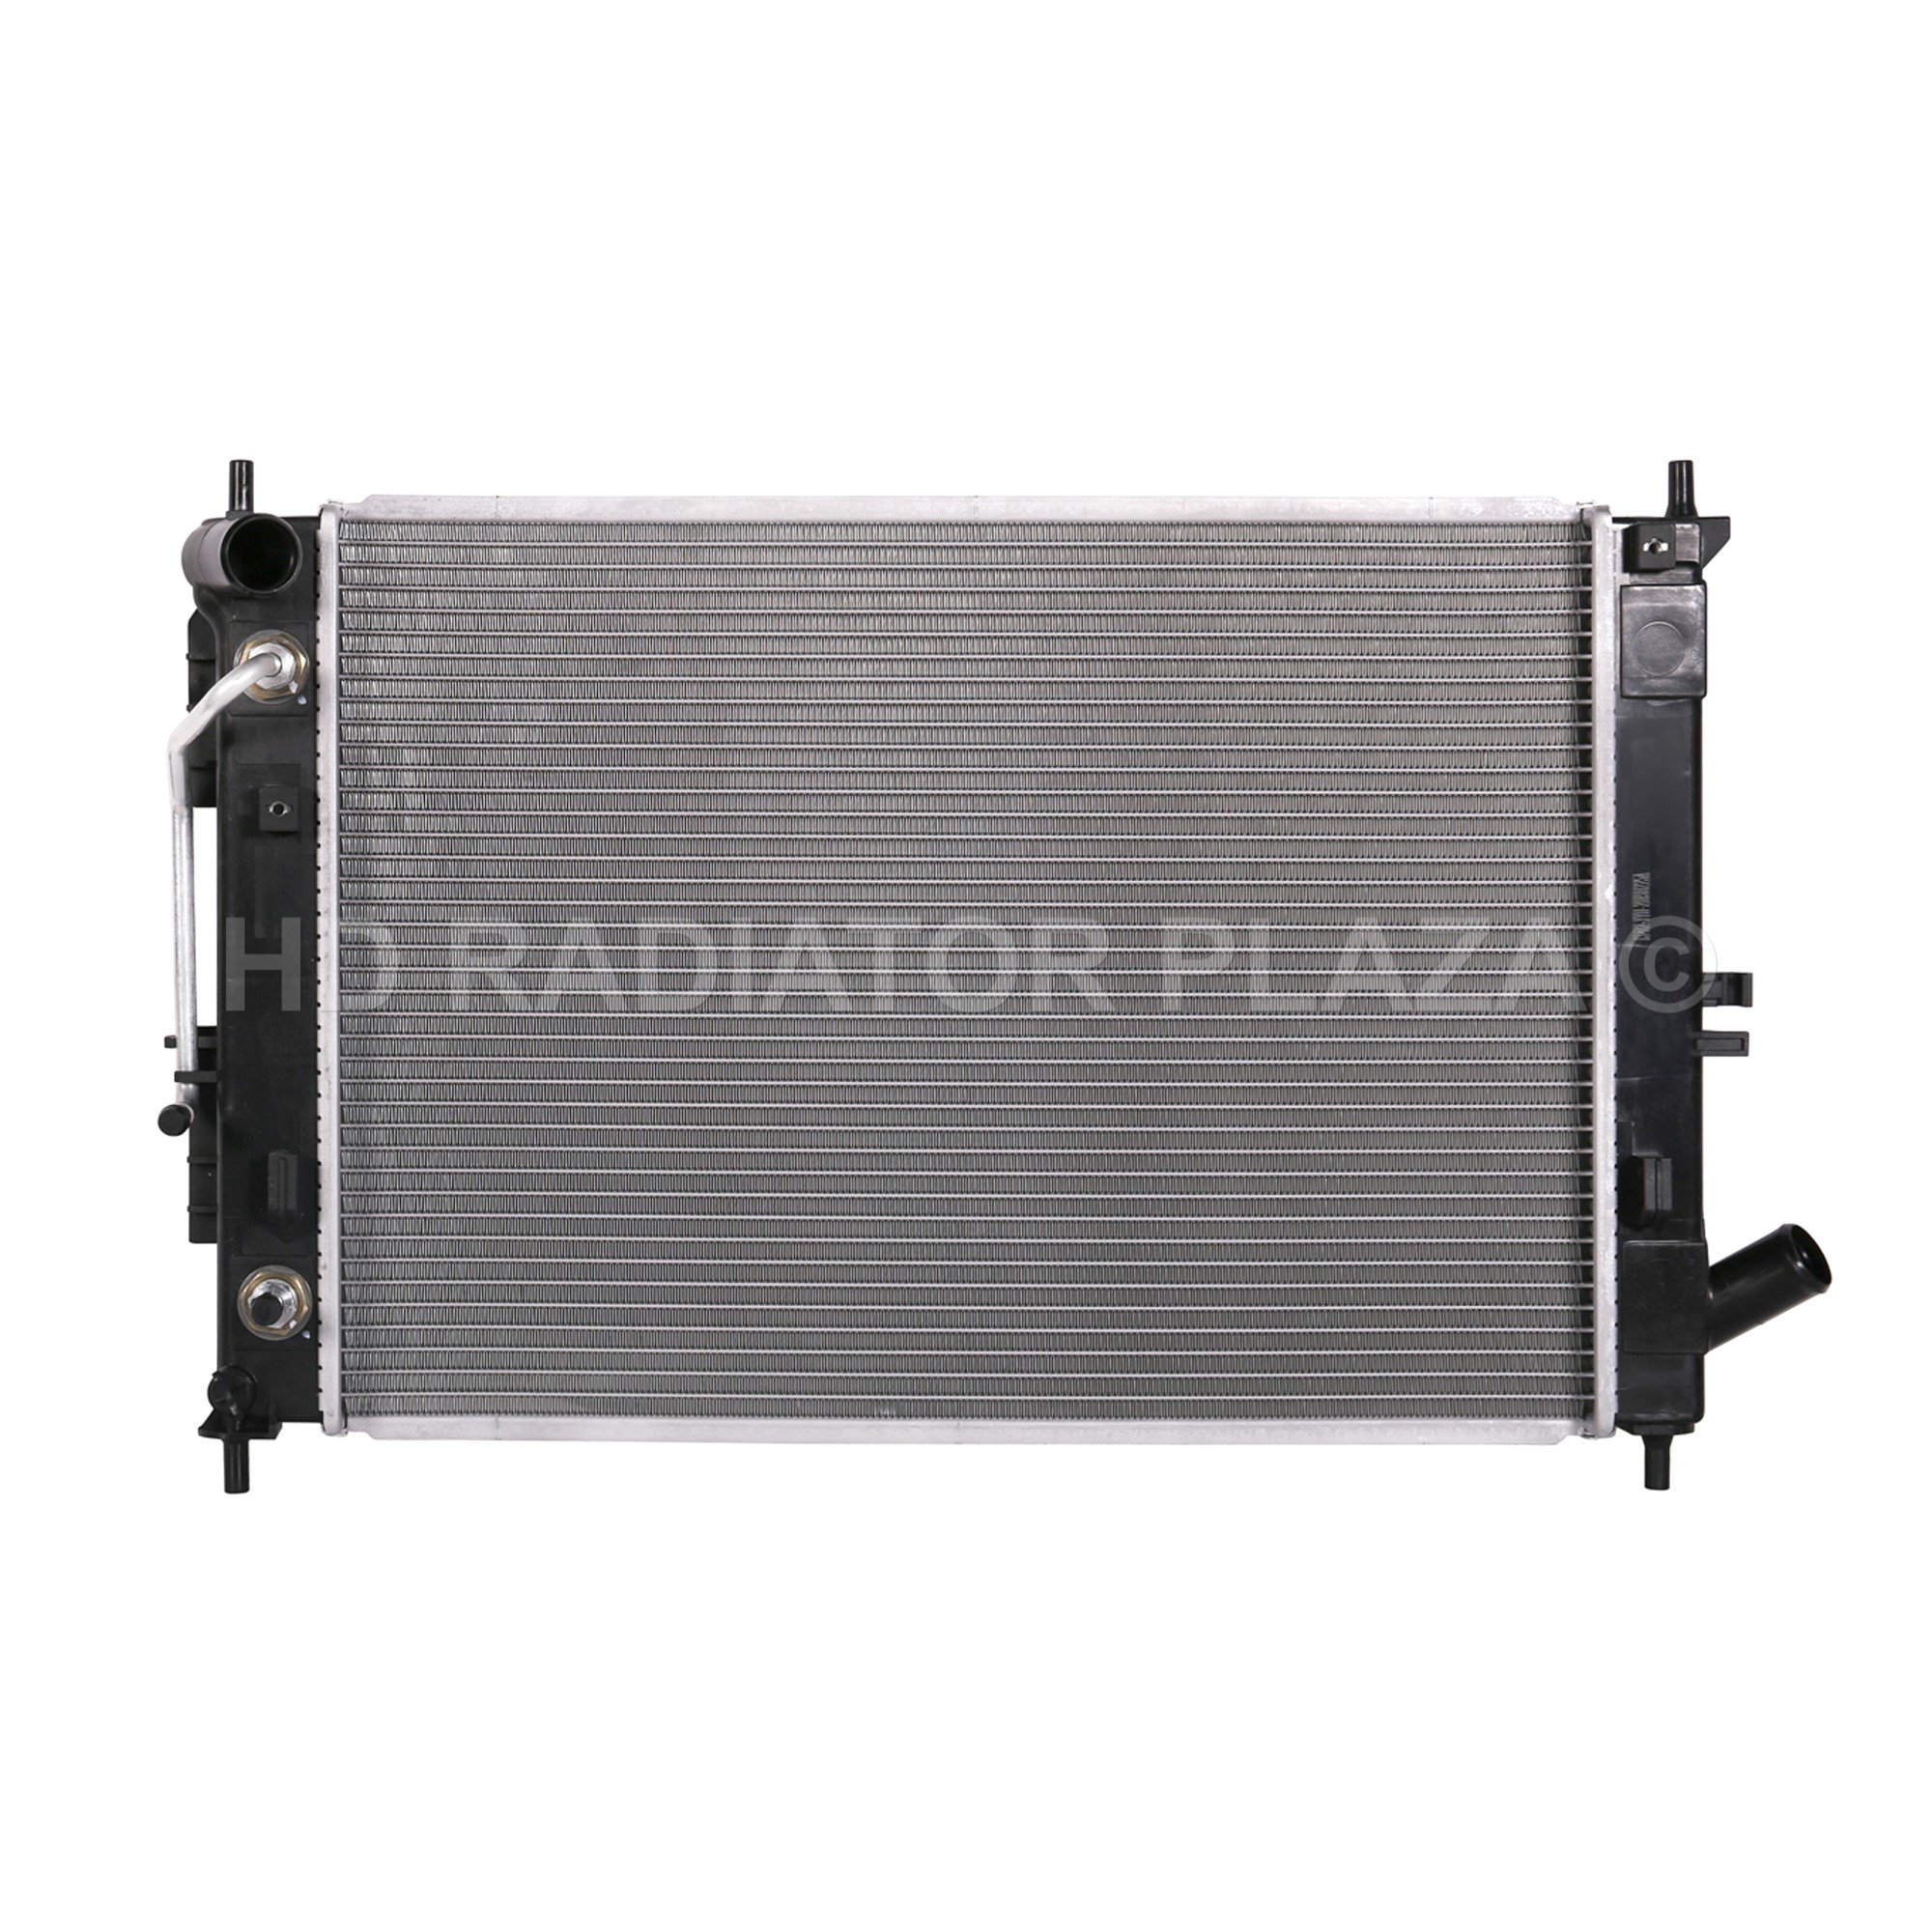 Radiator for 14-19 Hyundai Creta, Elantra / Kia Forte